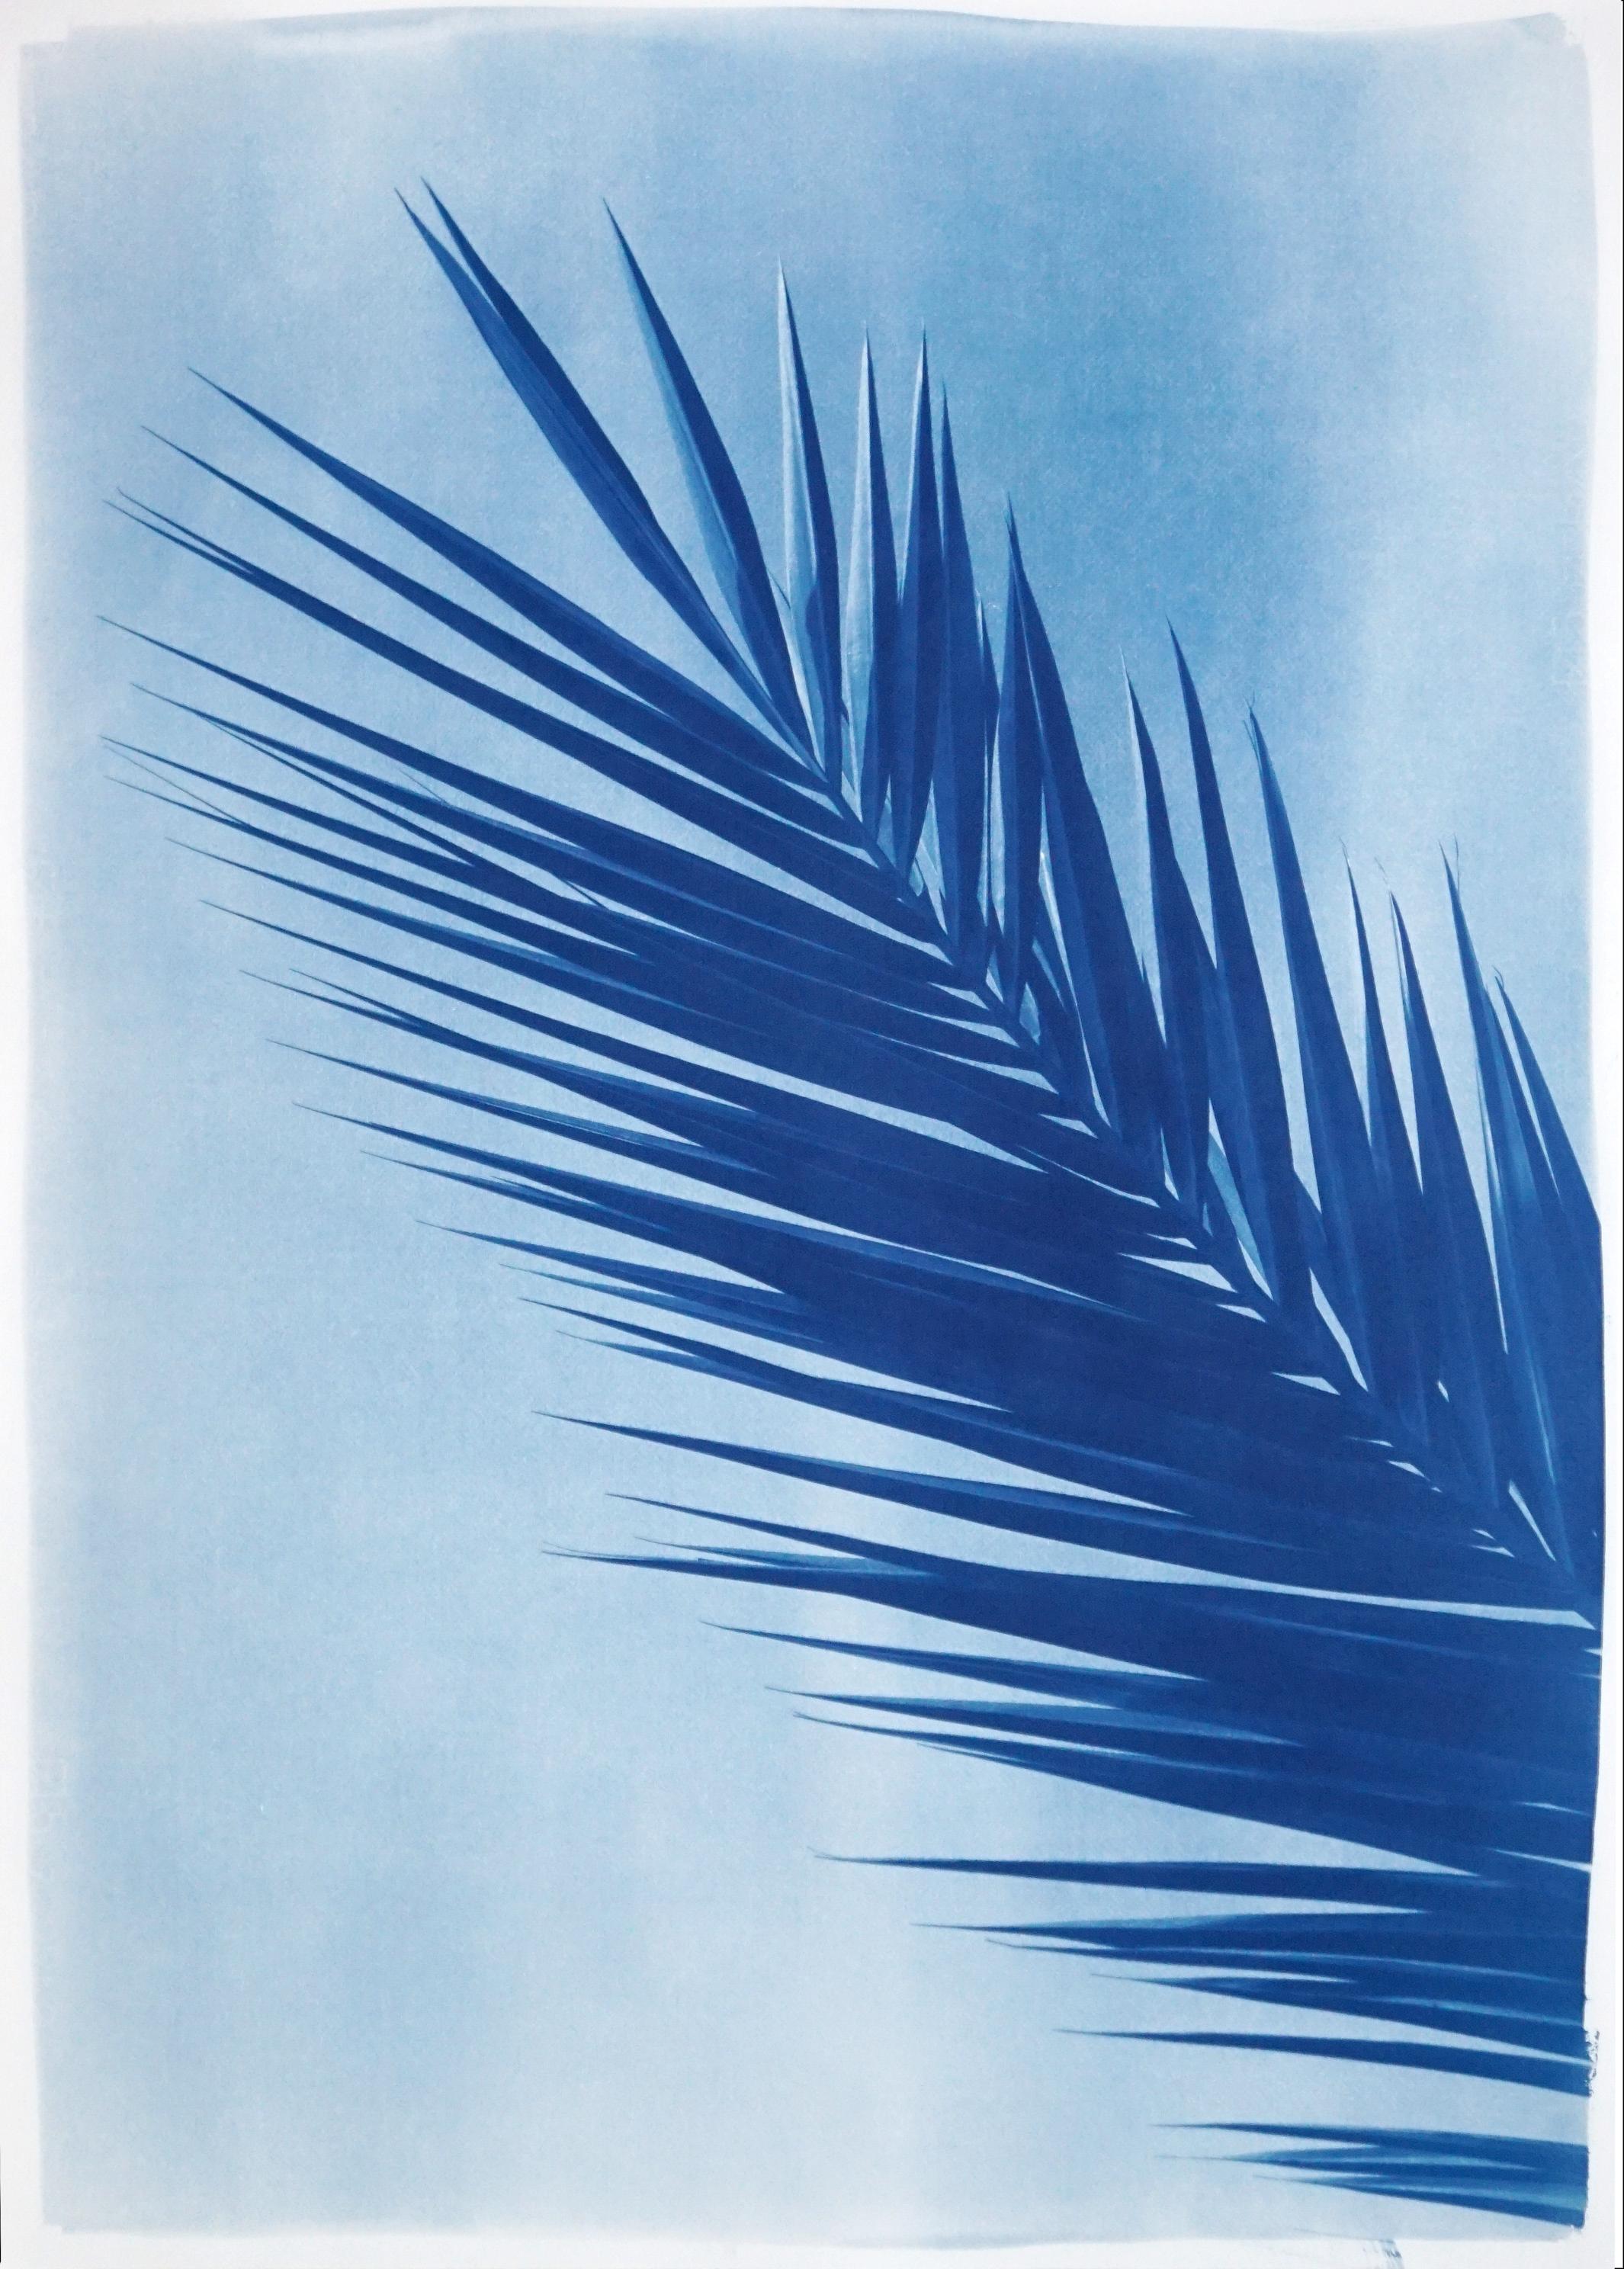 Palmenblatt über blauem Himmel, handgefertigte botanische Cyanotypie auf Papier, tropisches Vintage